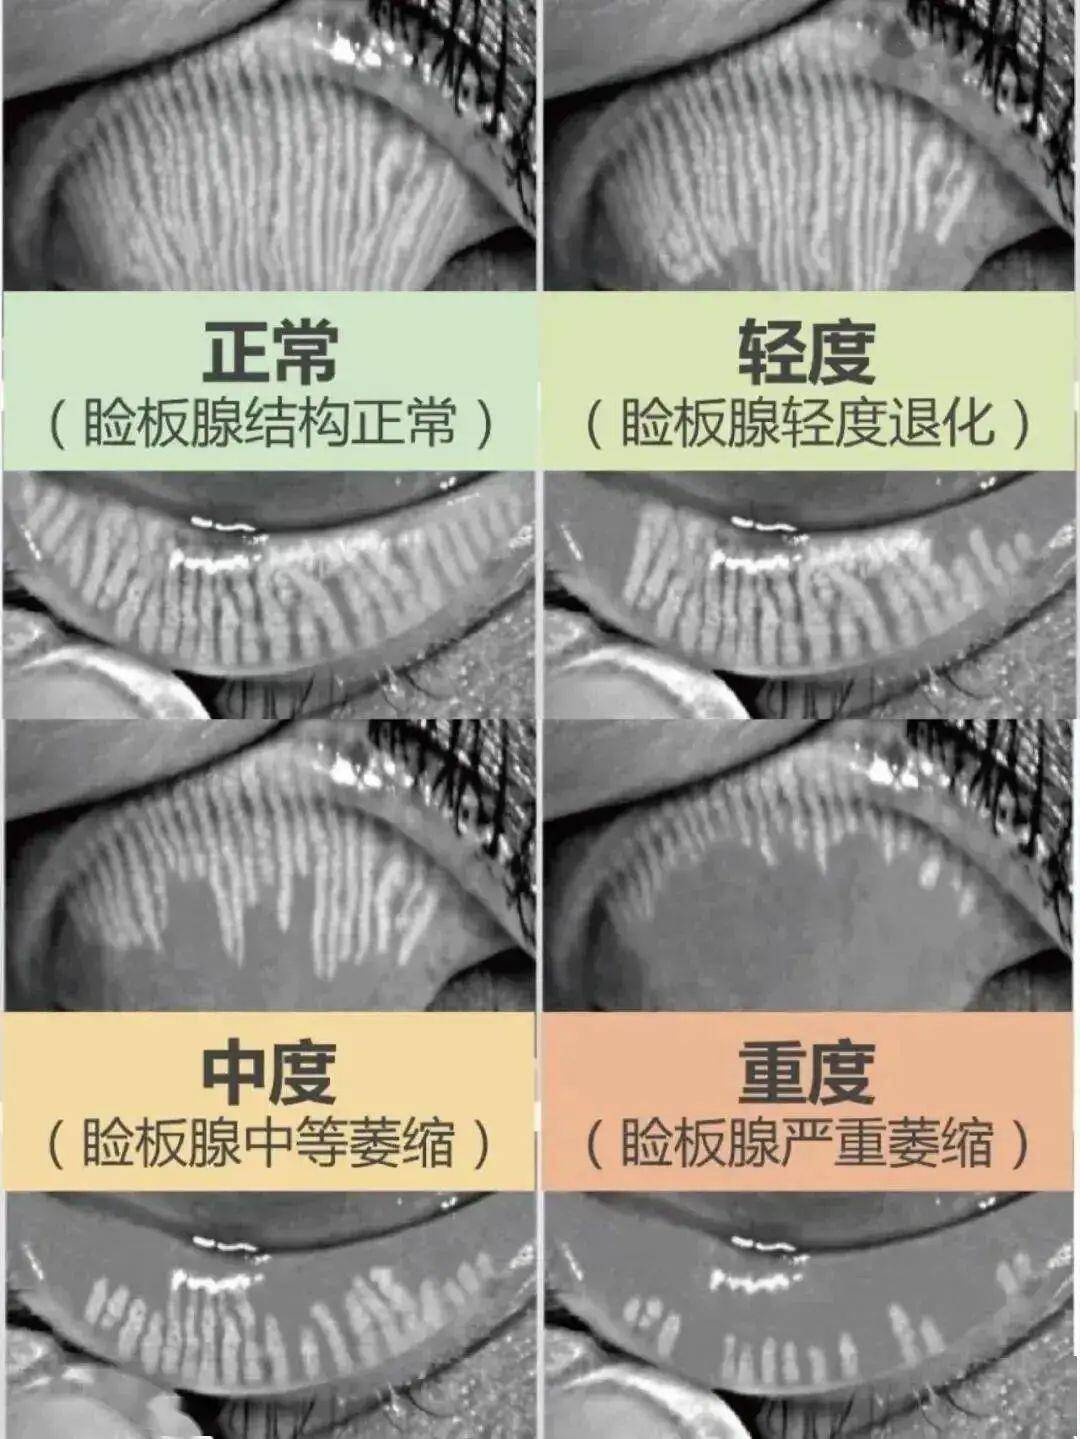 正常的睑板腺开口图片图片